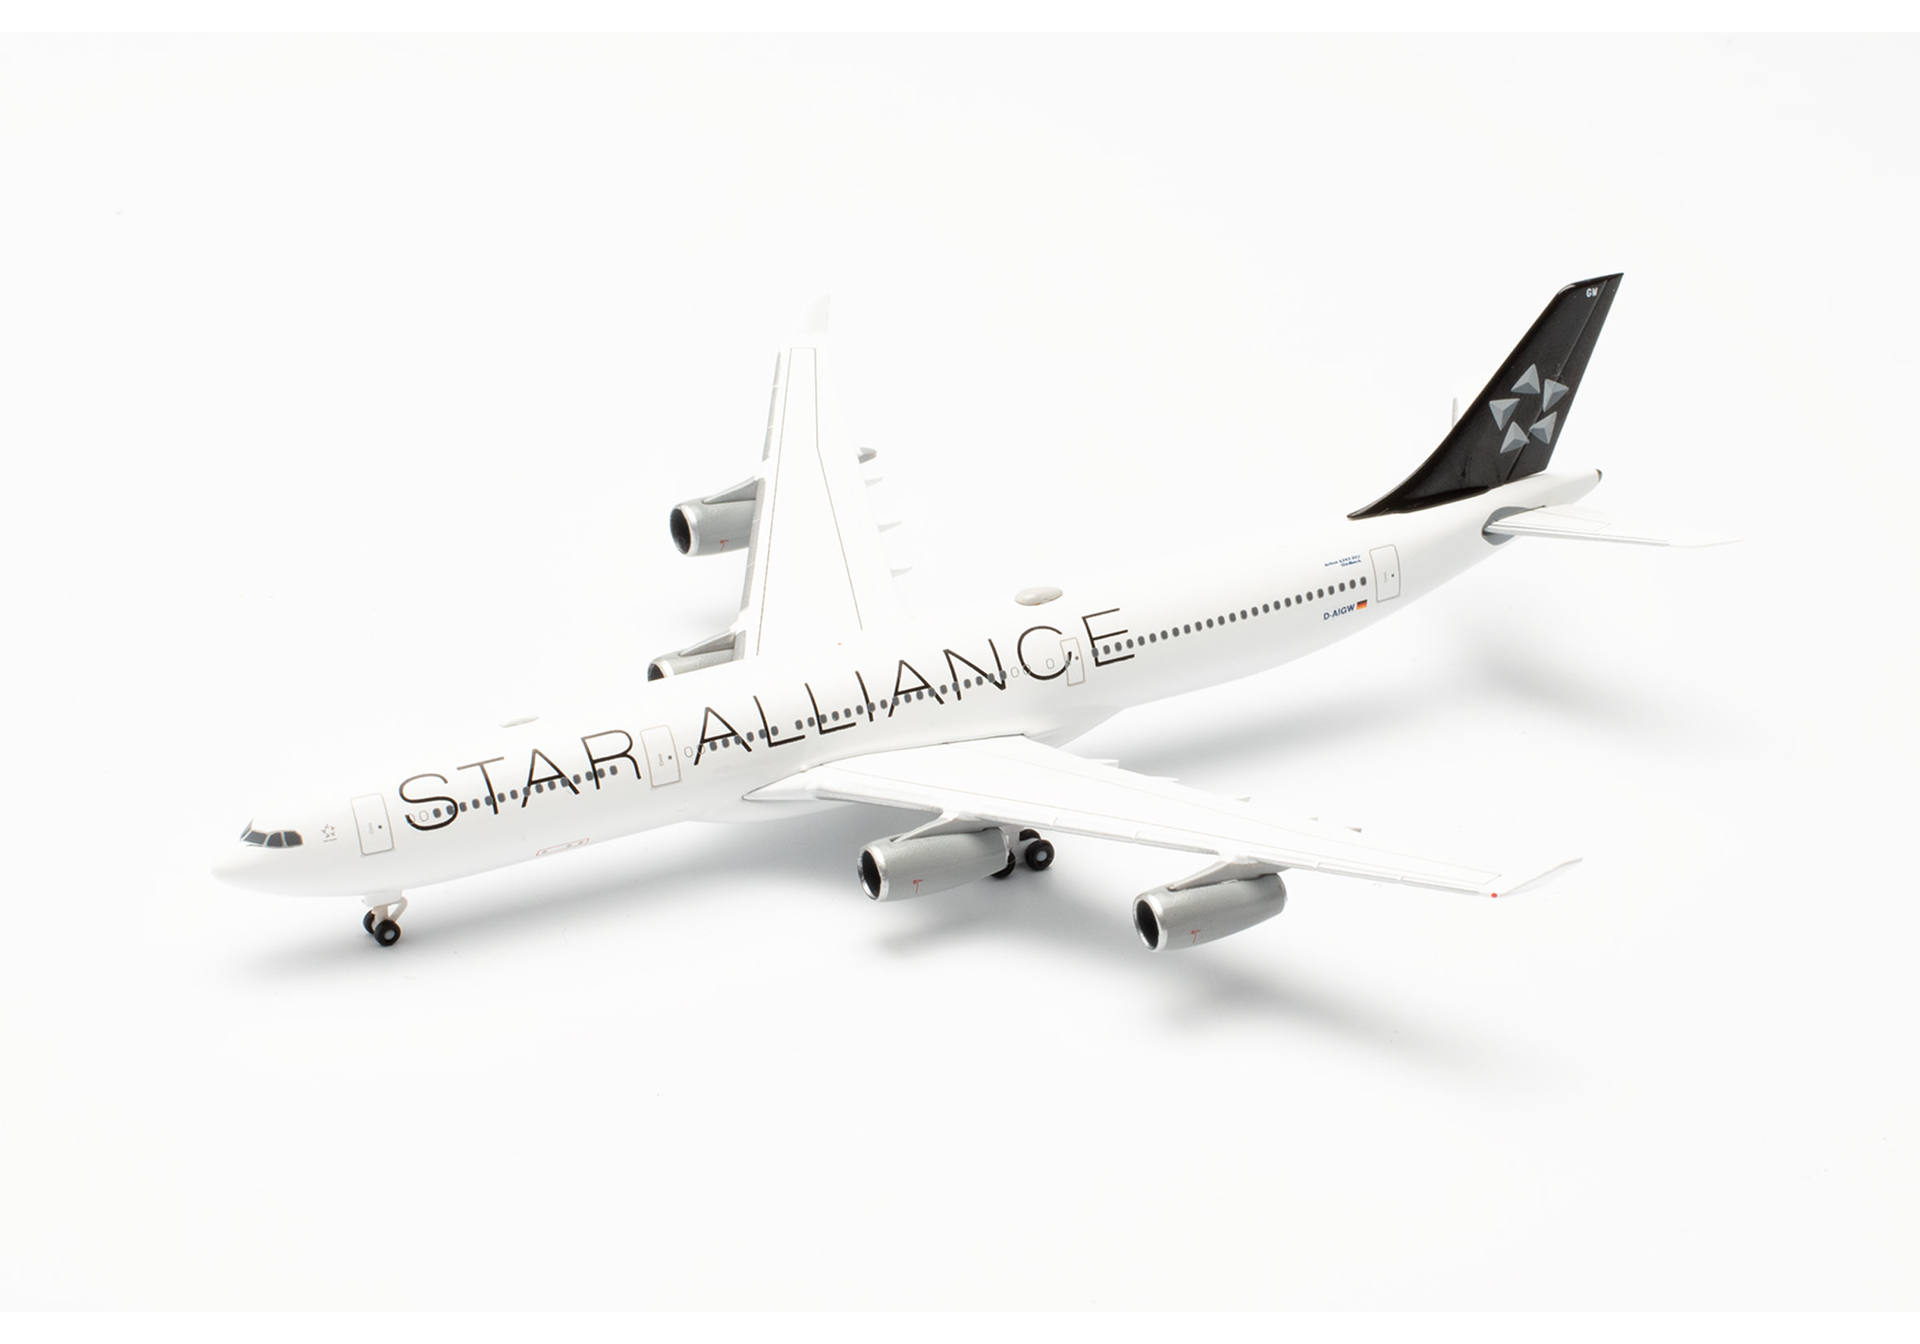 Lufthansa Airbus A340-300 "Star Alliance" - D-AIGW "Gladbeck"